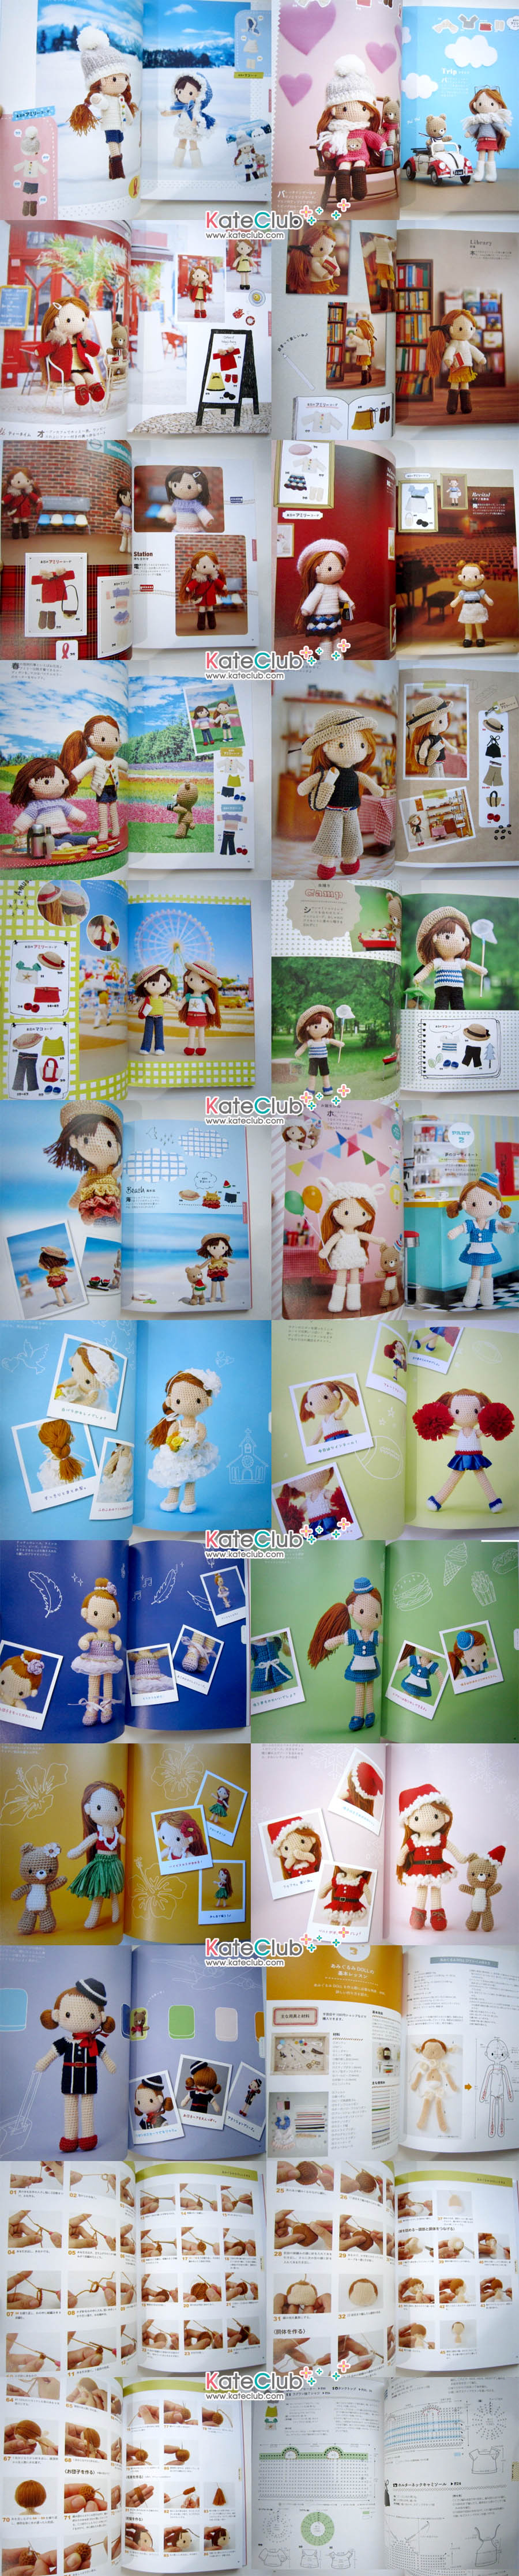 หนังสือสอนถักโครเชต์ตุ๊กตาเด็กผู้หญิง และเสื้อผ้า Miya